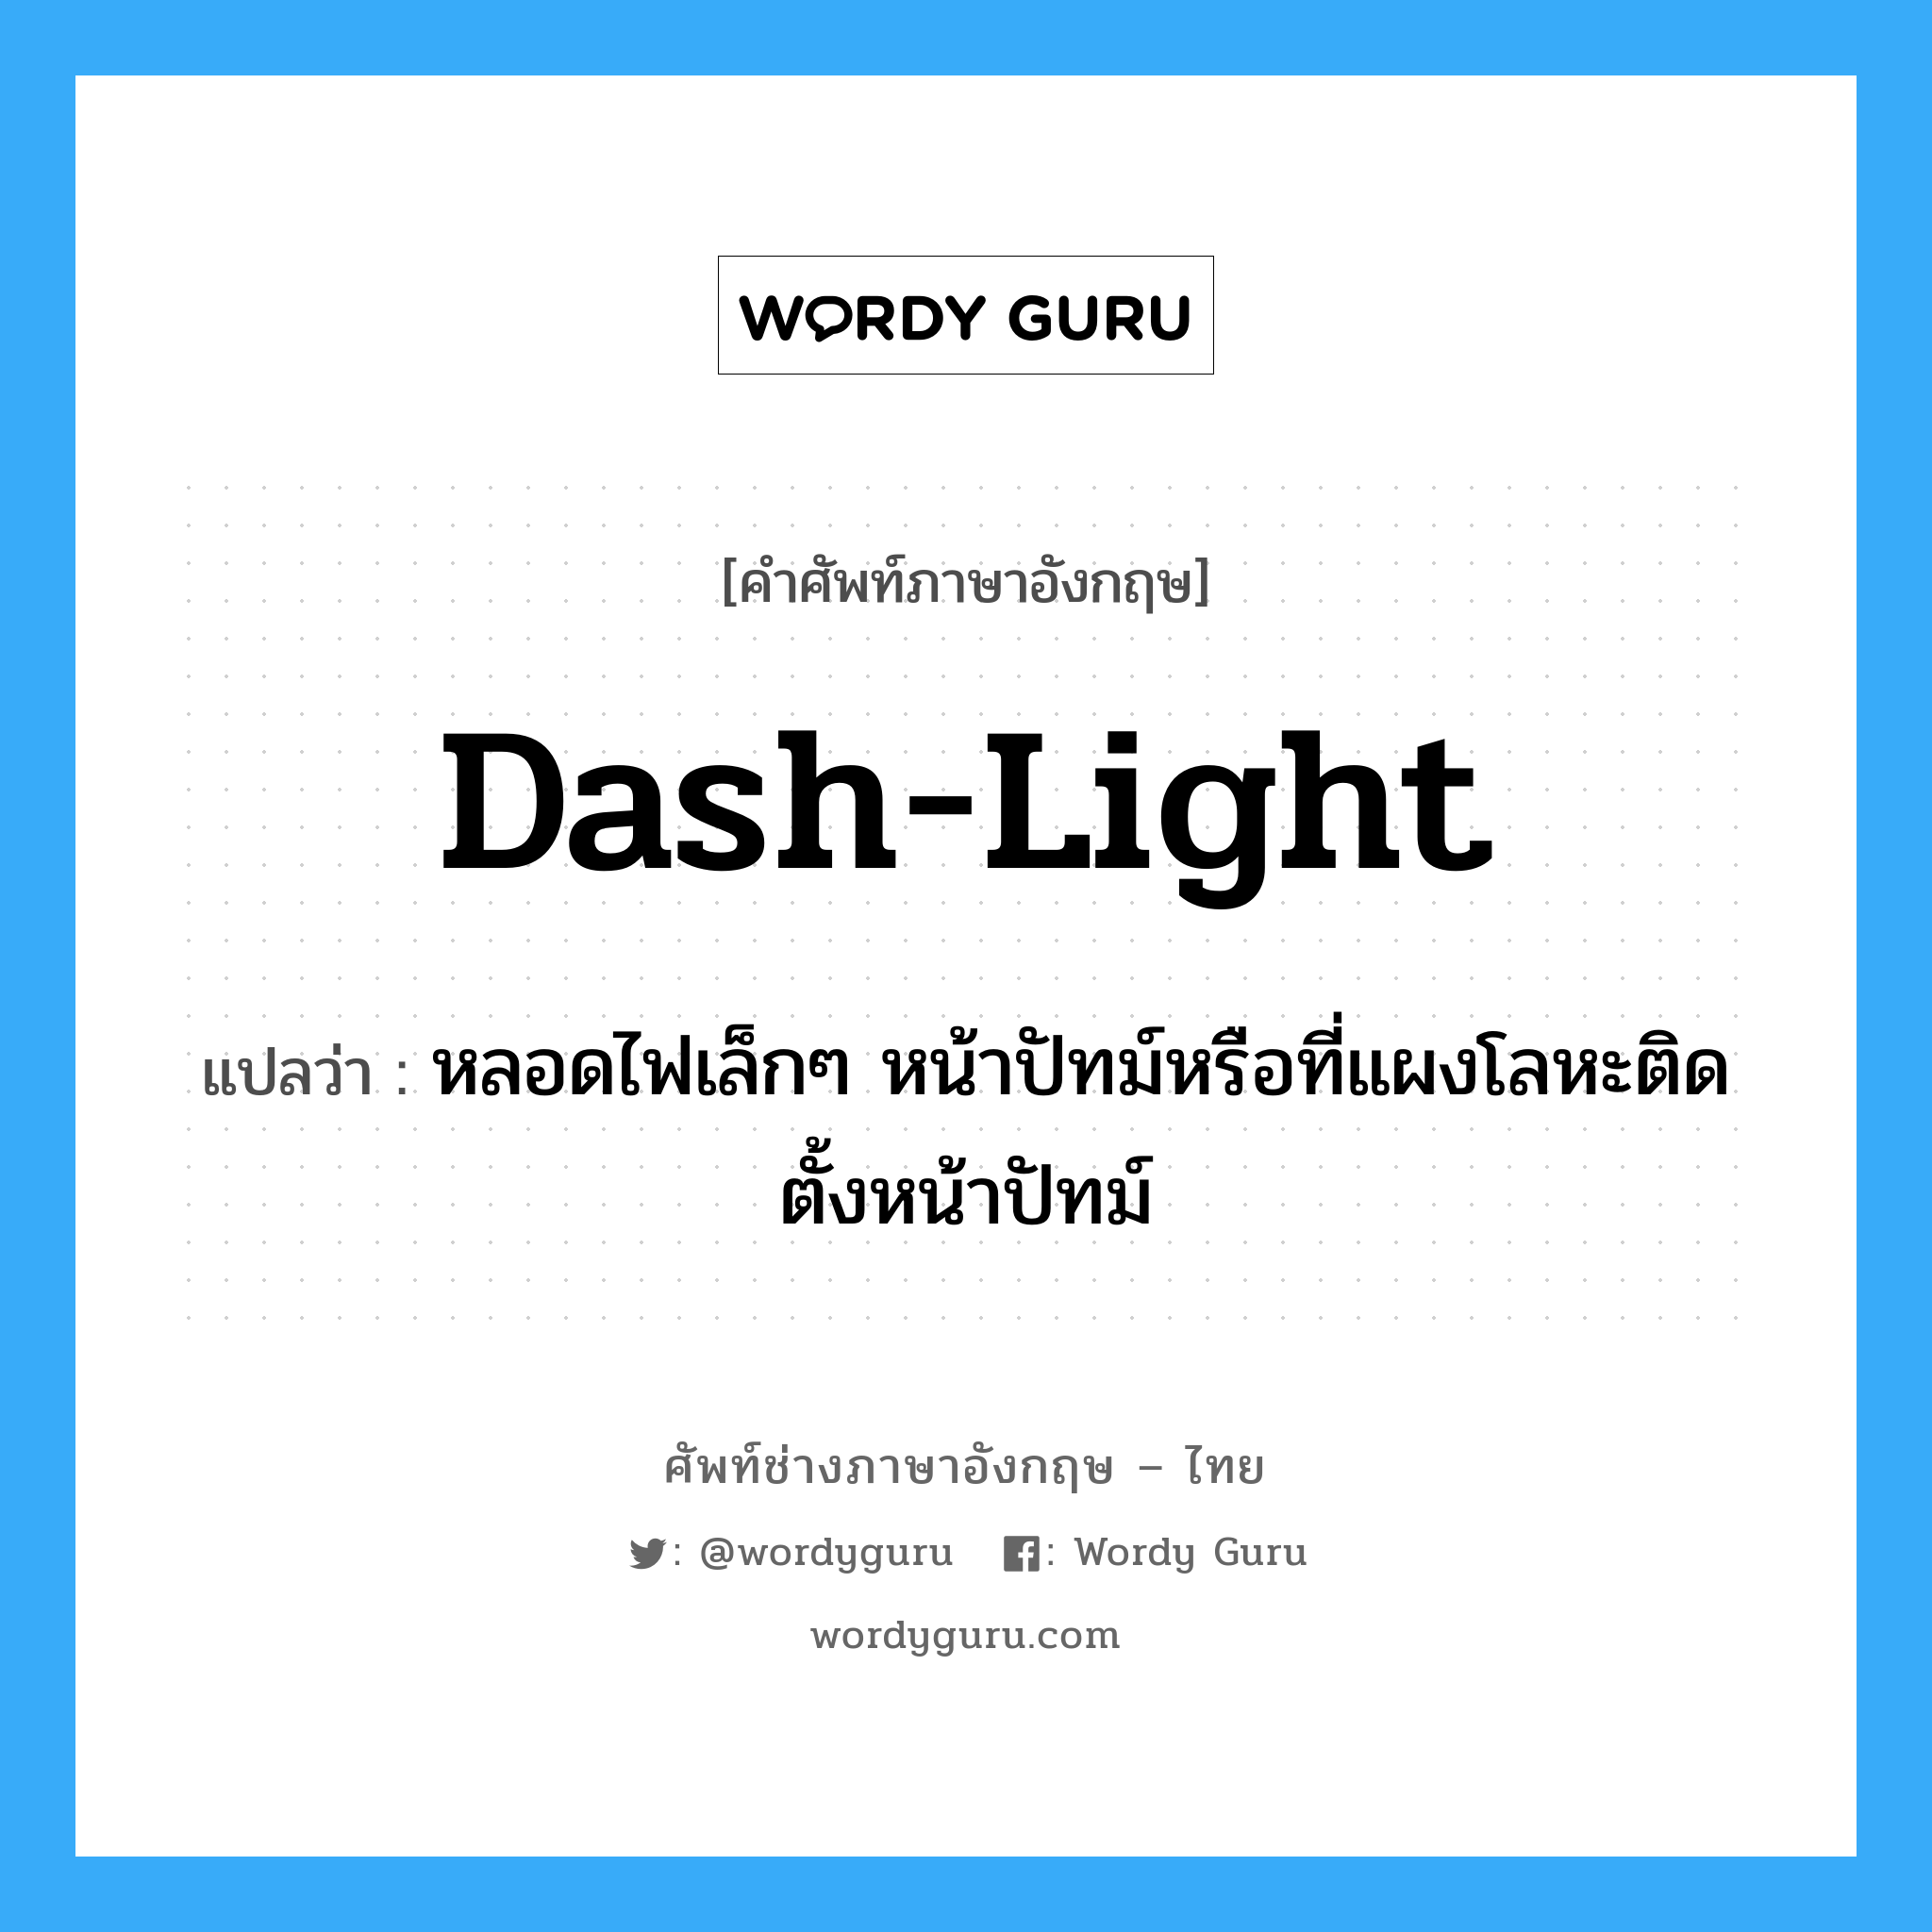 dash-light แปลว่า?, คำศัพท์ช่างภาษาอังกฤษ - ไทย dash-light คำศัพท์ภาษาอังกฤษ dash-light แปลว่า หลอดไฟเล็กๆ หน้าปัทม์หรือที่แผงโลหะติดตั้งหน้าปัทม์